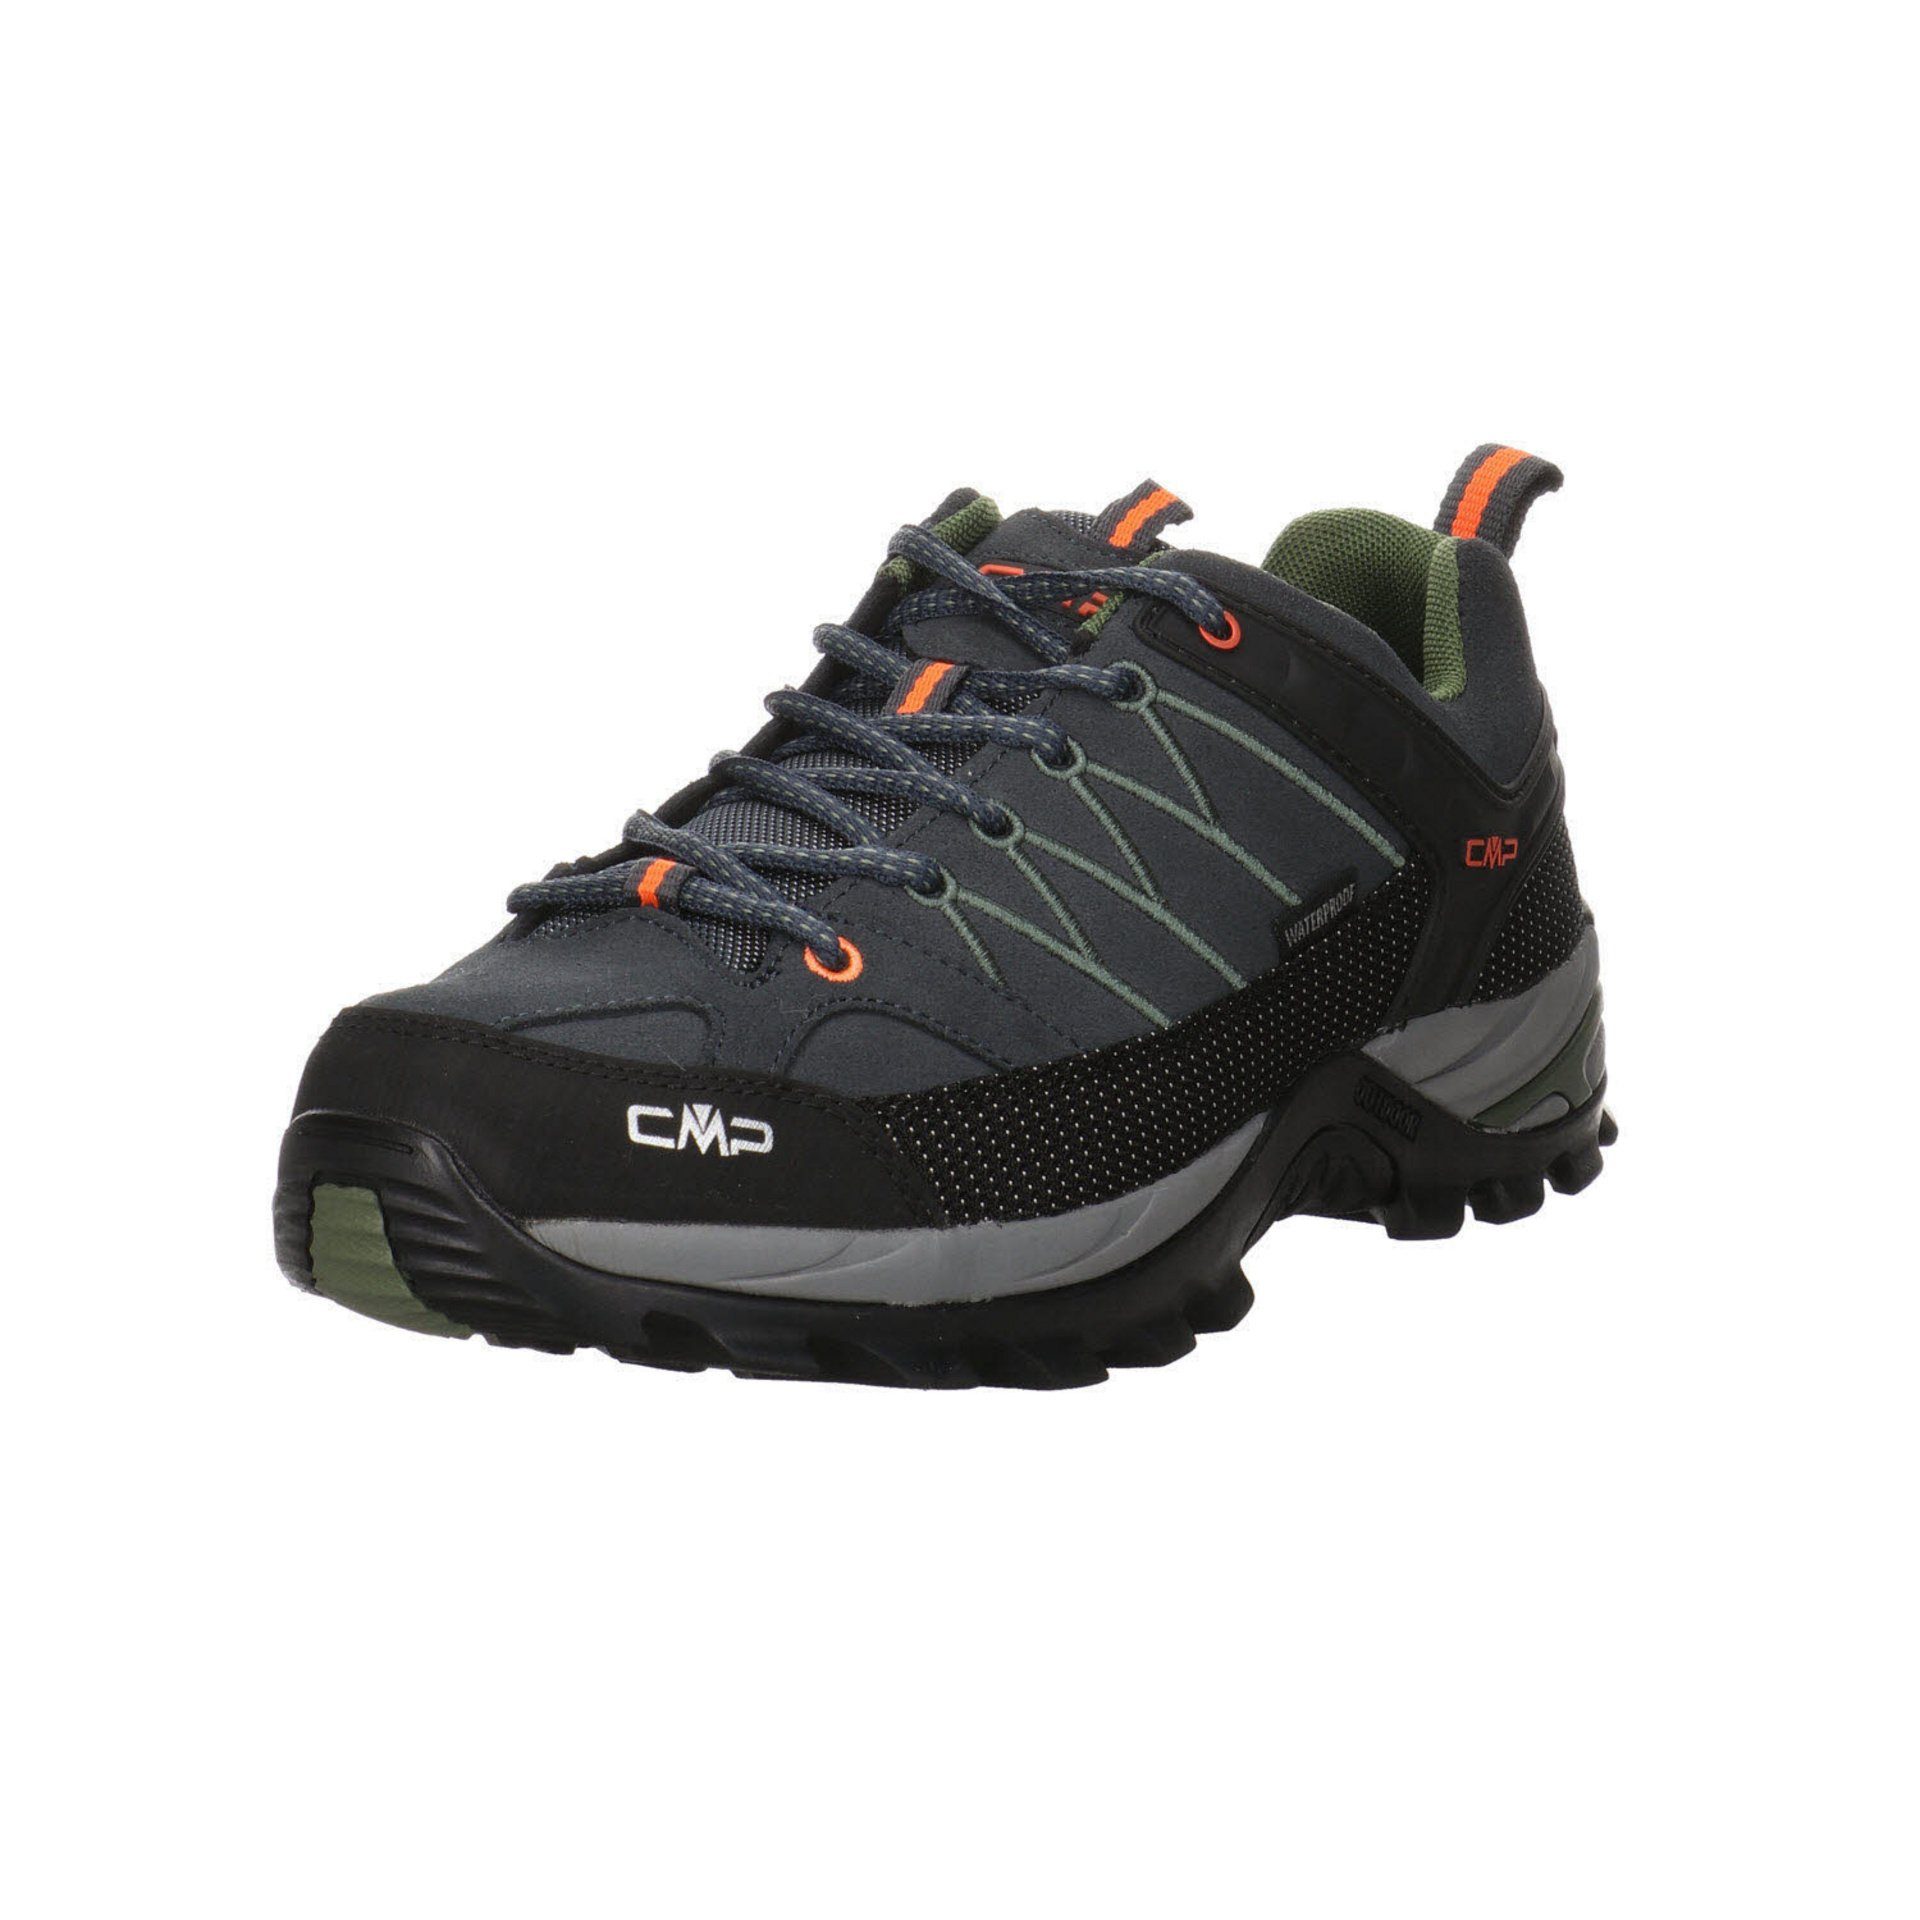 CMP Herren Outdoor Schuhe Low Outdoorschuh (03201805) Grau Outdoorschuh Rigel Leder-/Textilkombination